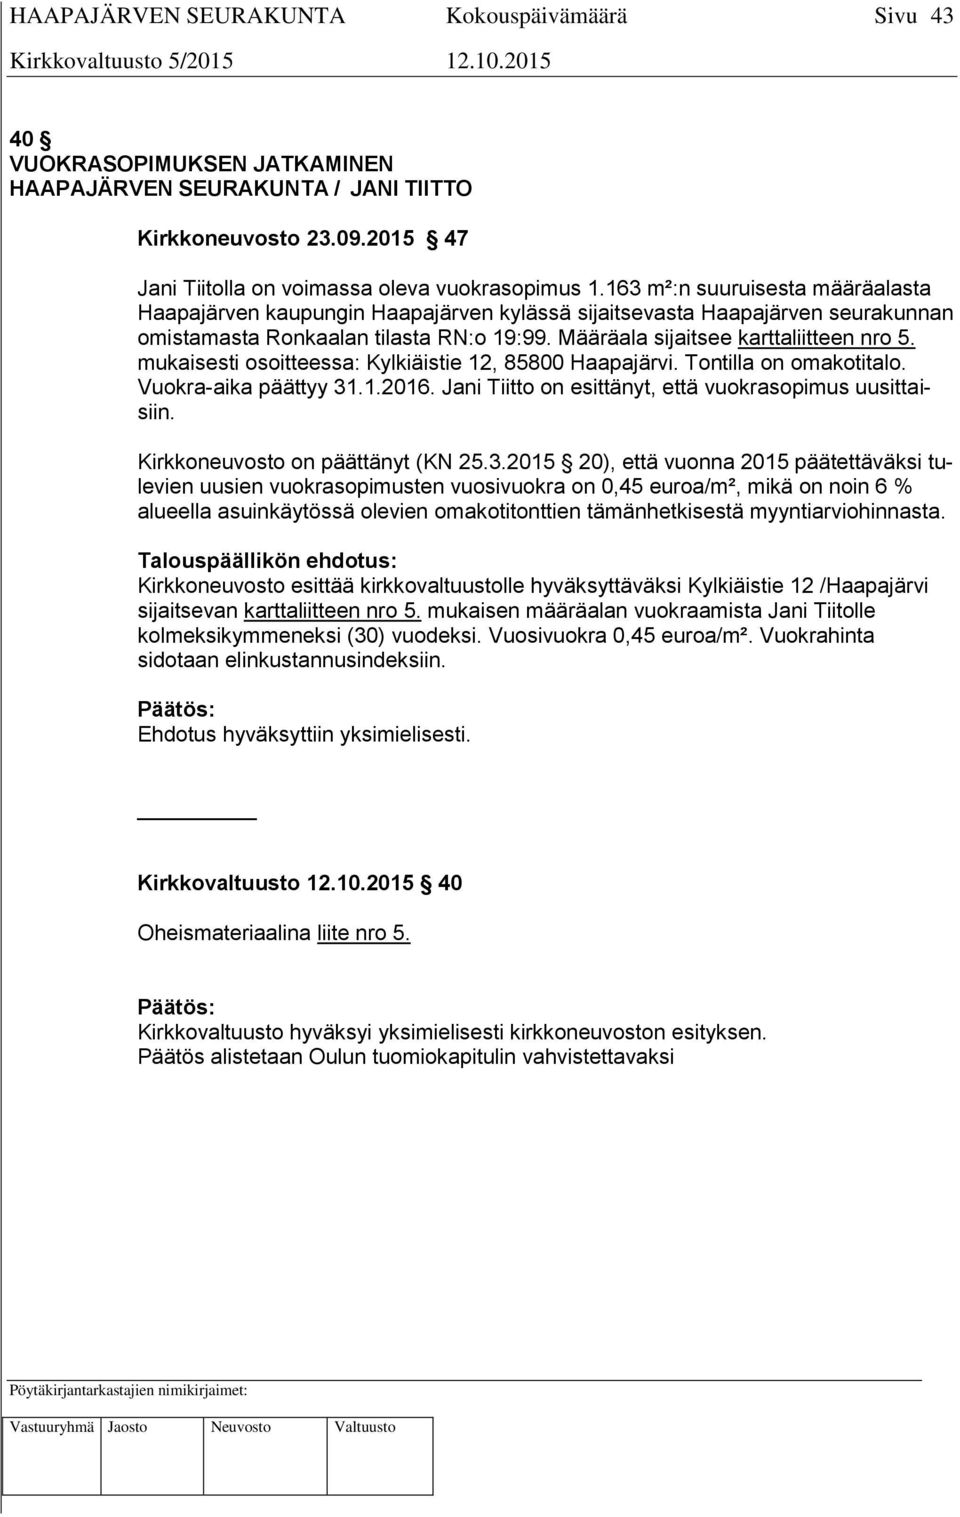 mukaisesti osoitteessa: Kylkiäistie 12, 85800 Haapajärvi. Tontilla on omakotitalo. Vuokra-aika päättyy 31.1.2016. Jani Tiitto on esittänyt, että vuokrasopimus uusittaisiin.